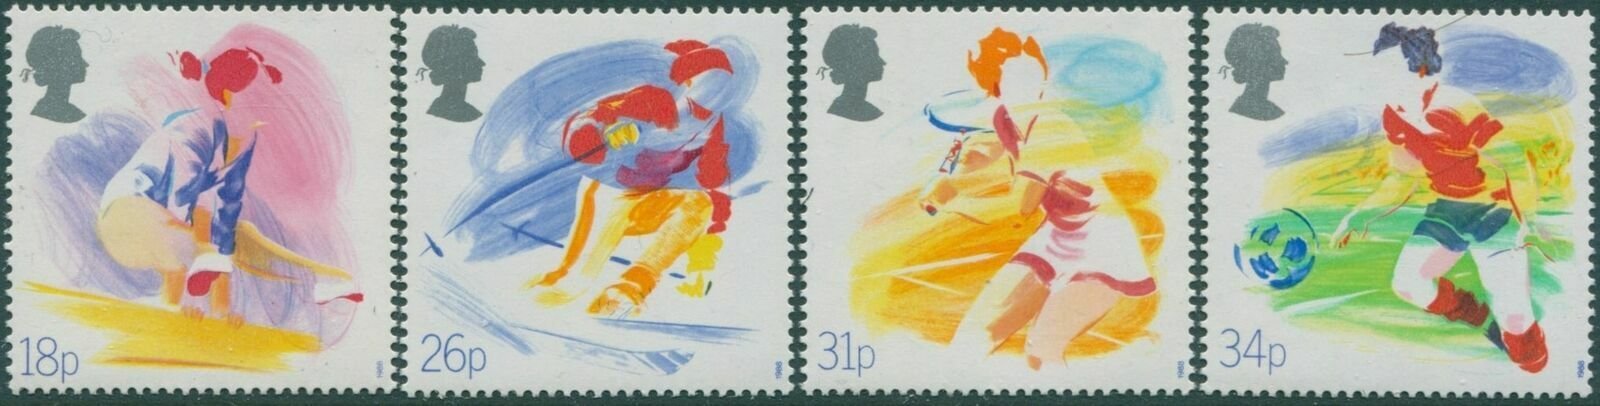 Marea Britanie 1988 - Sport, serie neuzata